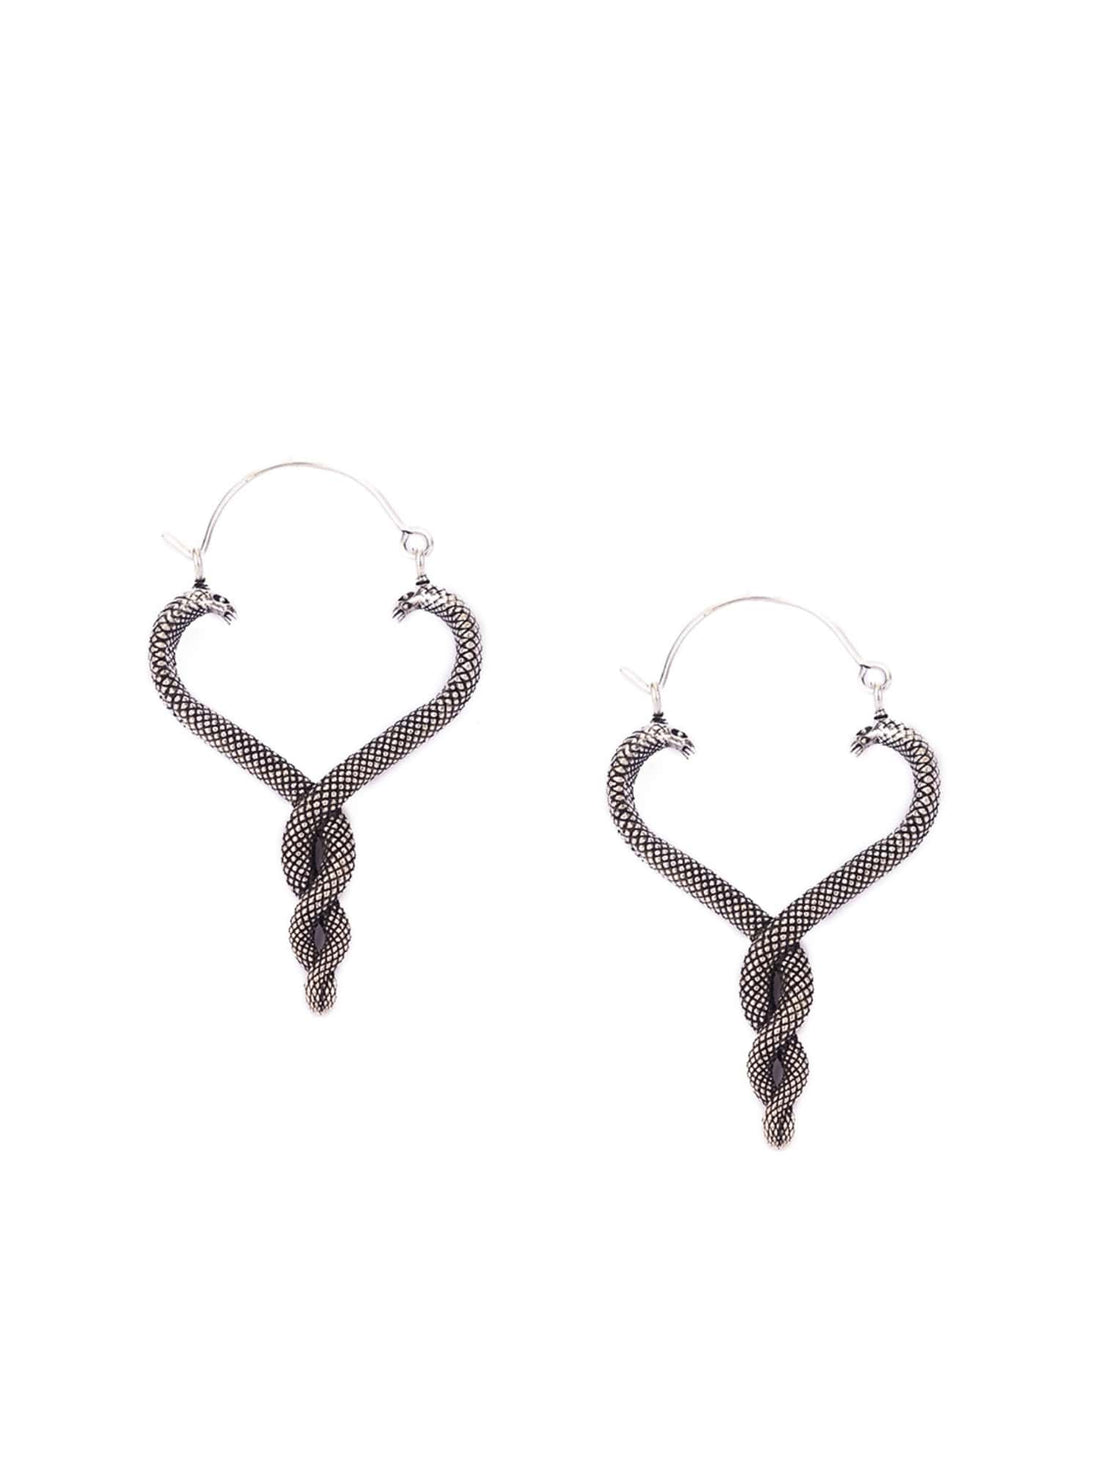 Party Wear Hoops Earrings - Western Silver-Plated Brass Earrings By Studio One Love